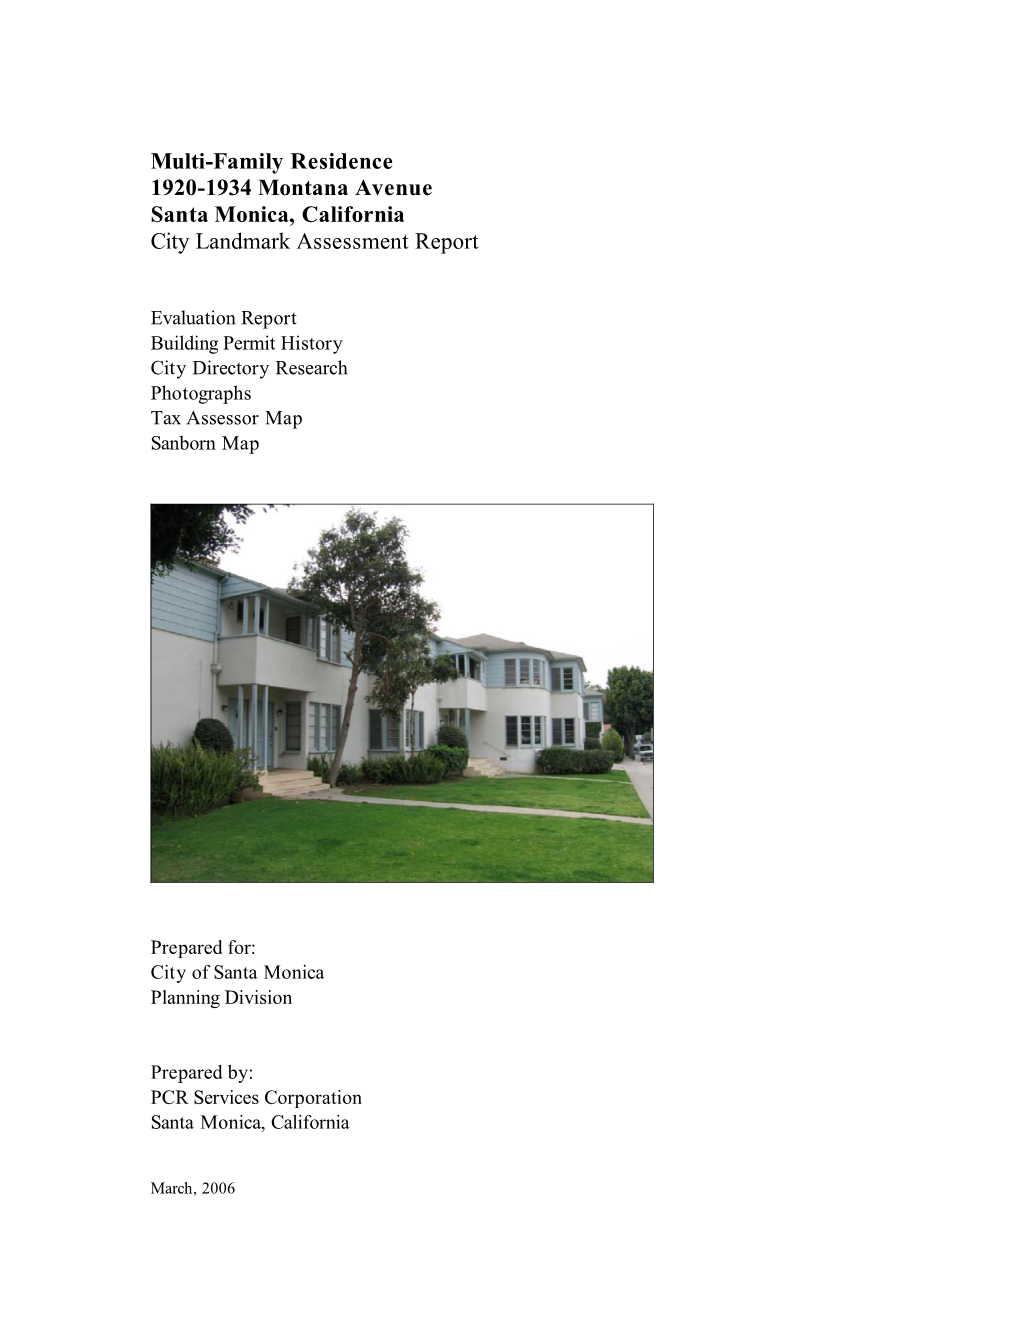 Multi-Family Residence 1920-1934 Montana Avenue Santa Monica, California City Landmark Assessment Report